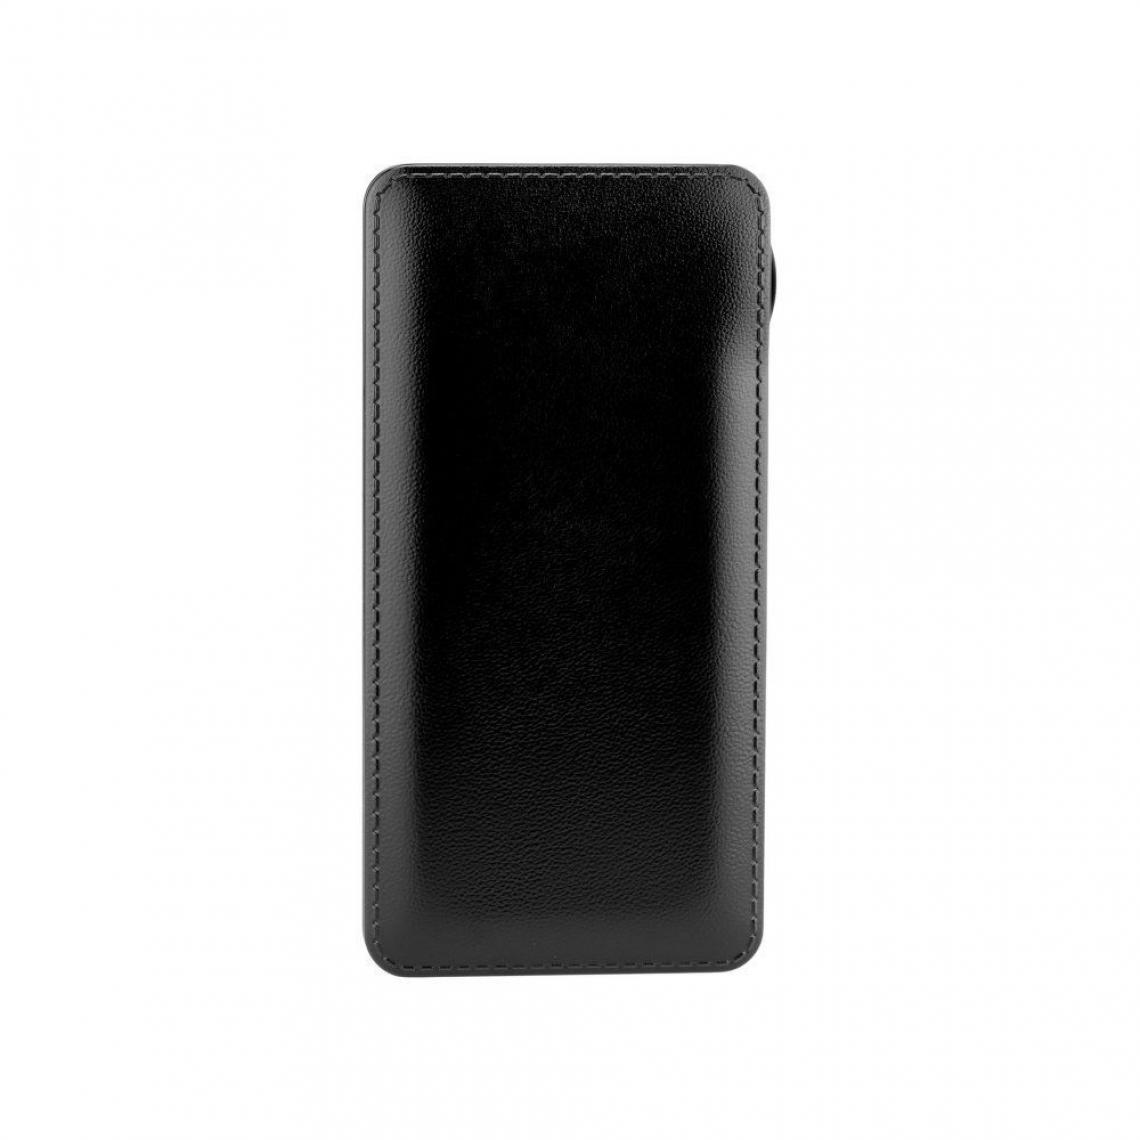 Ozzzo - Chargeur batterie externe 20000 mAh powerbank ozzzo noir pour Lenovo TB3 730M - Autres accessoires smartphone